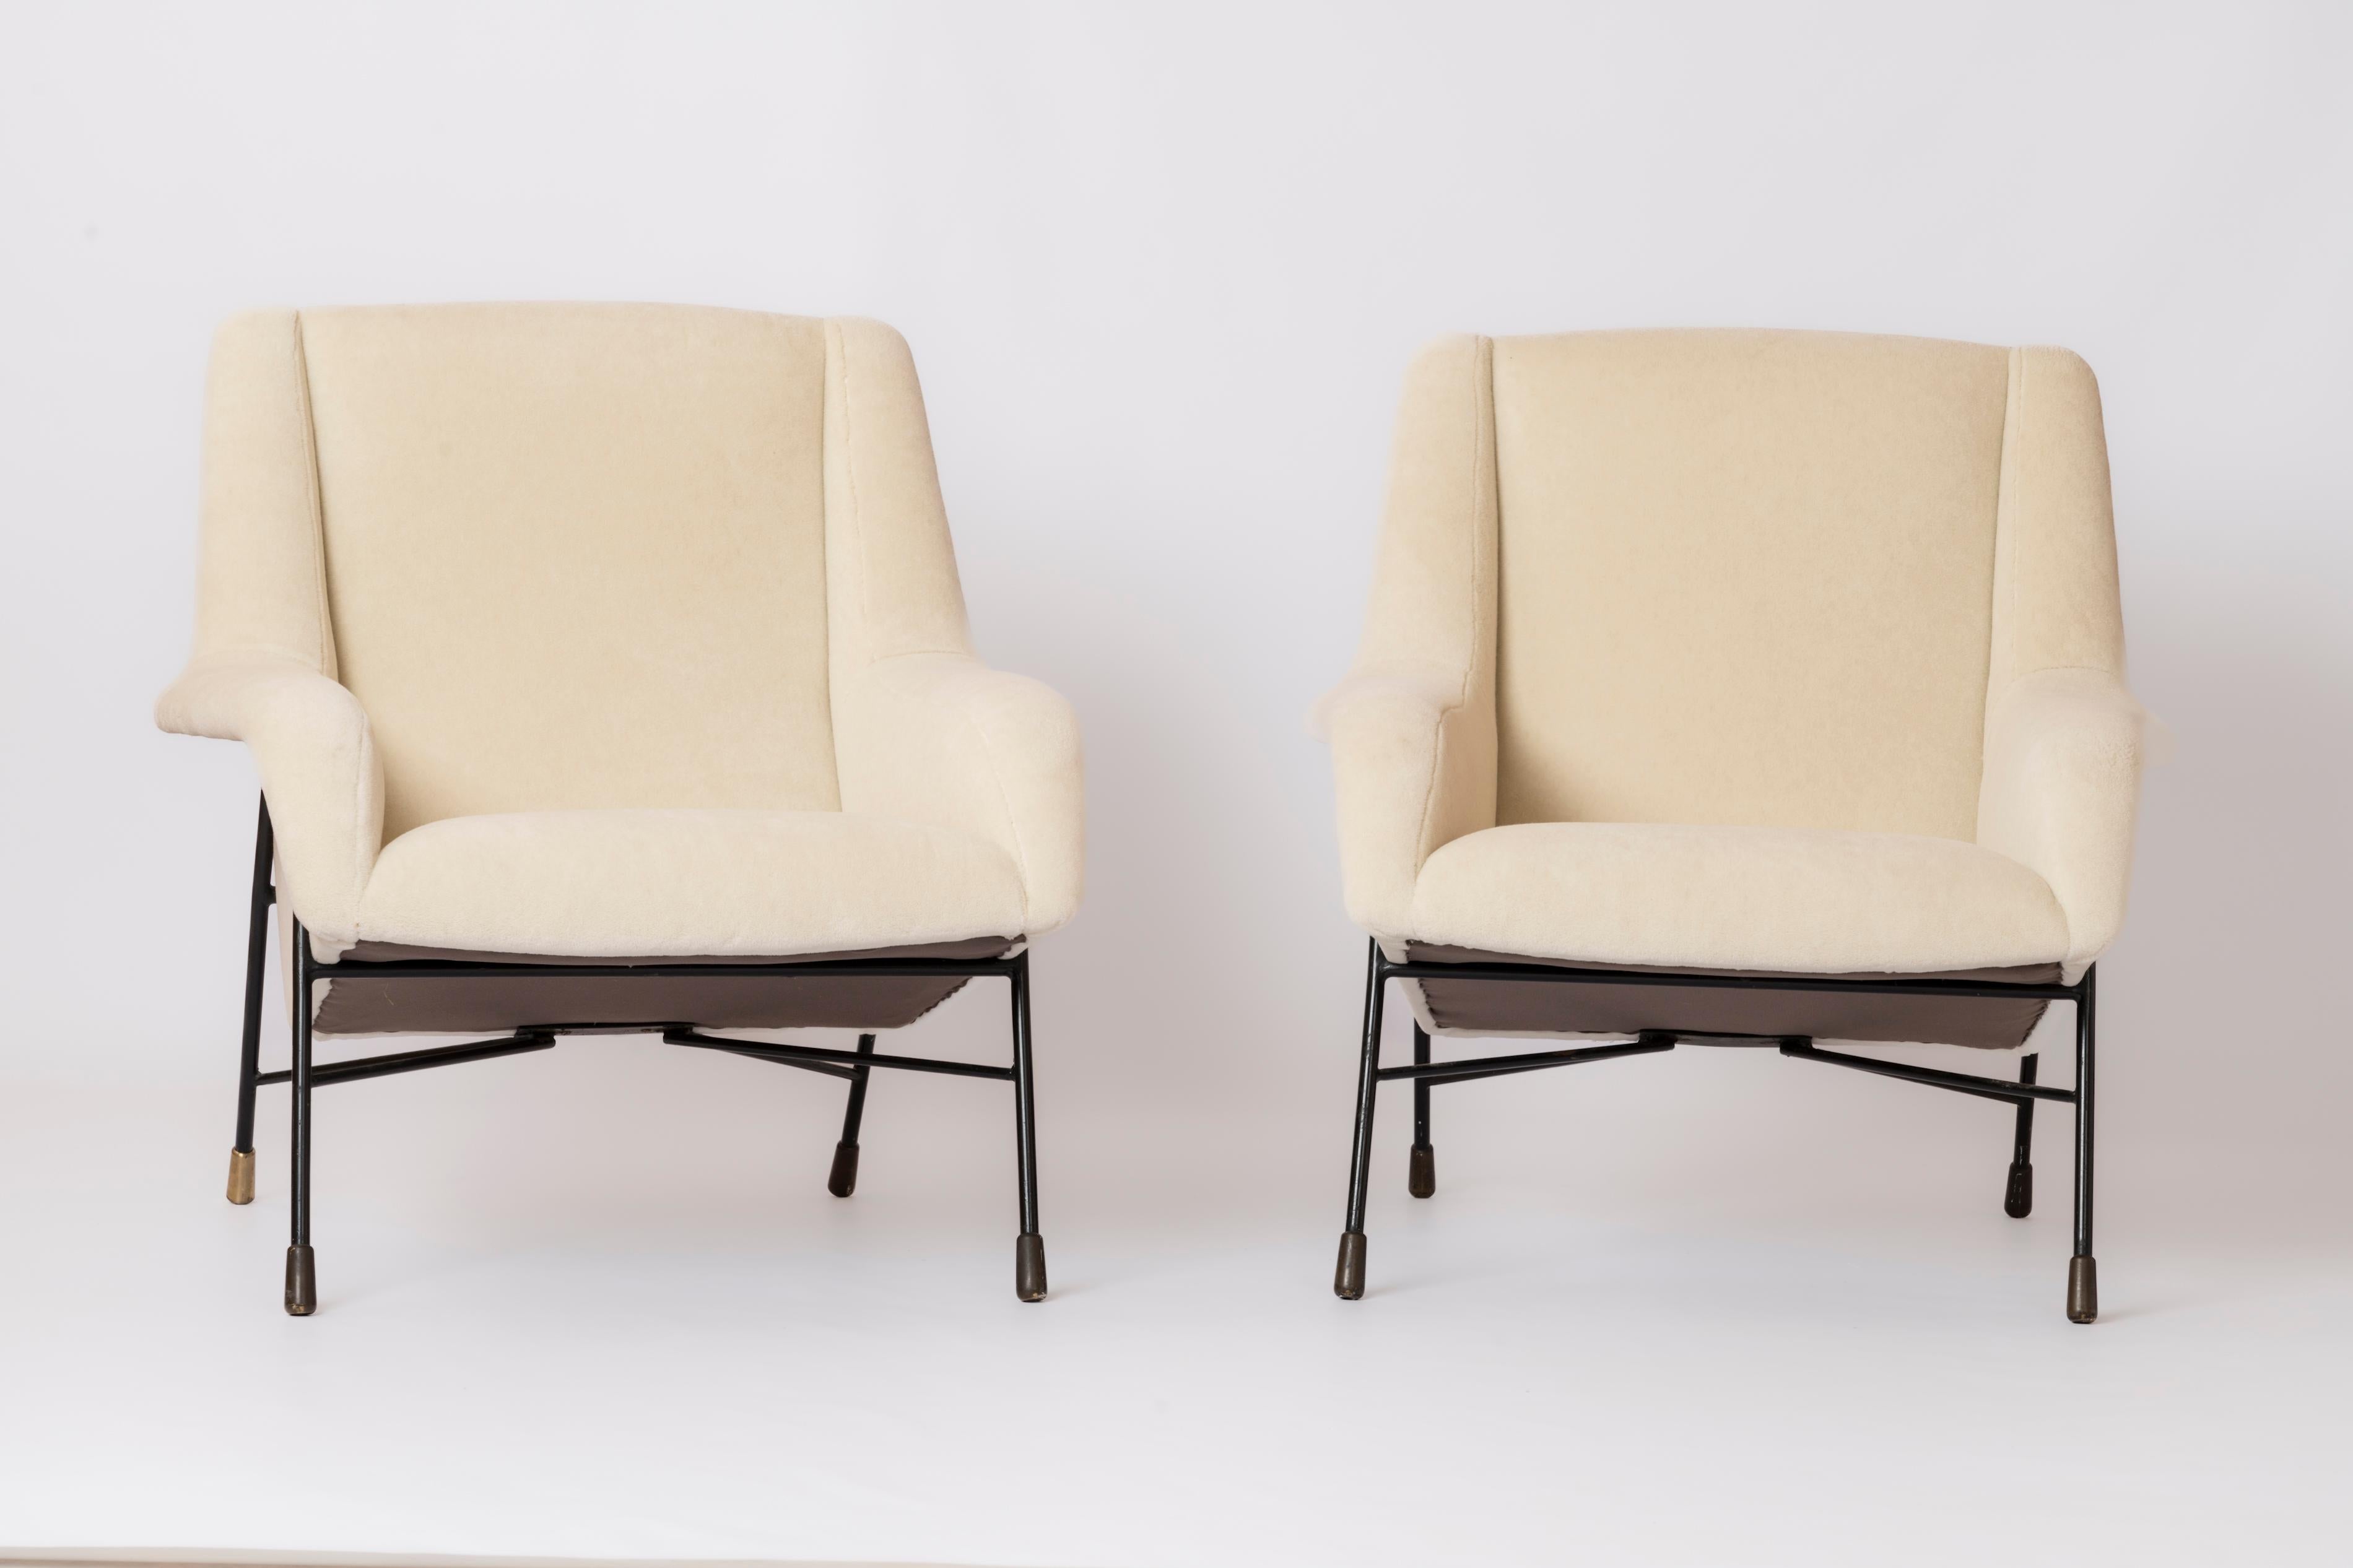 Rare paire de chaises longues du célèbre designer belge Alfred Hendrickx. Le modèle présenté est documenté comme étant le modèle S12 produit par Belform, Belgique, à la fin des années 1950.
Fraîchement retapissé en mohair crème Pierre Frey